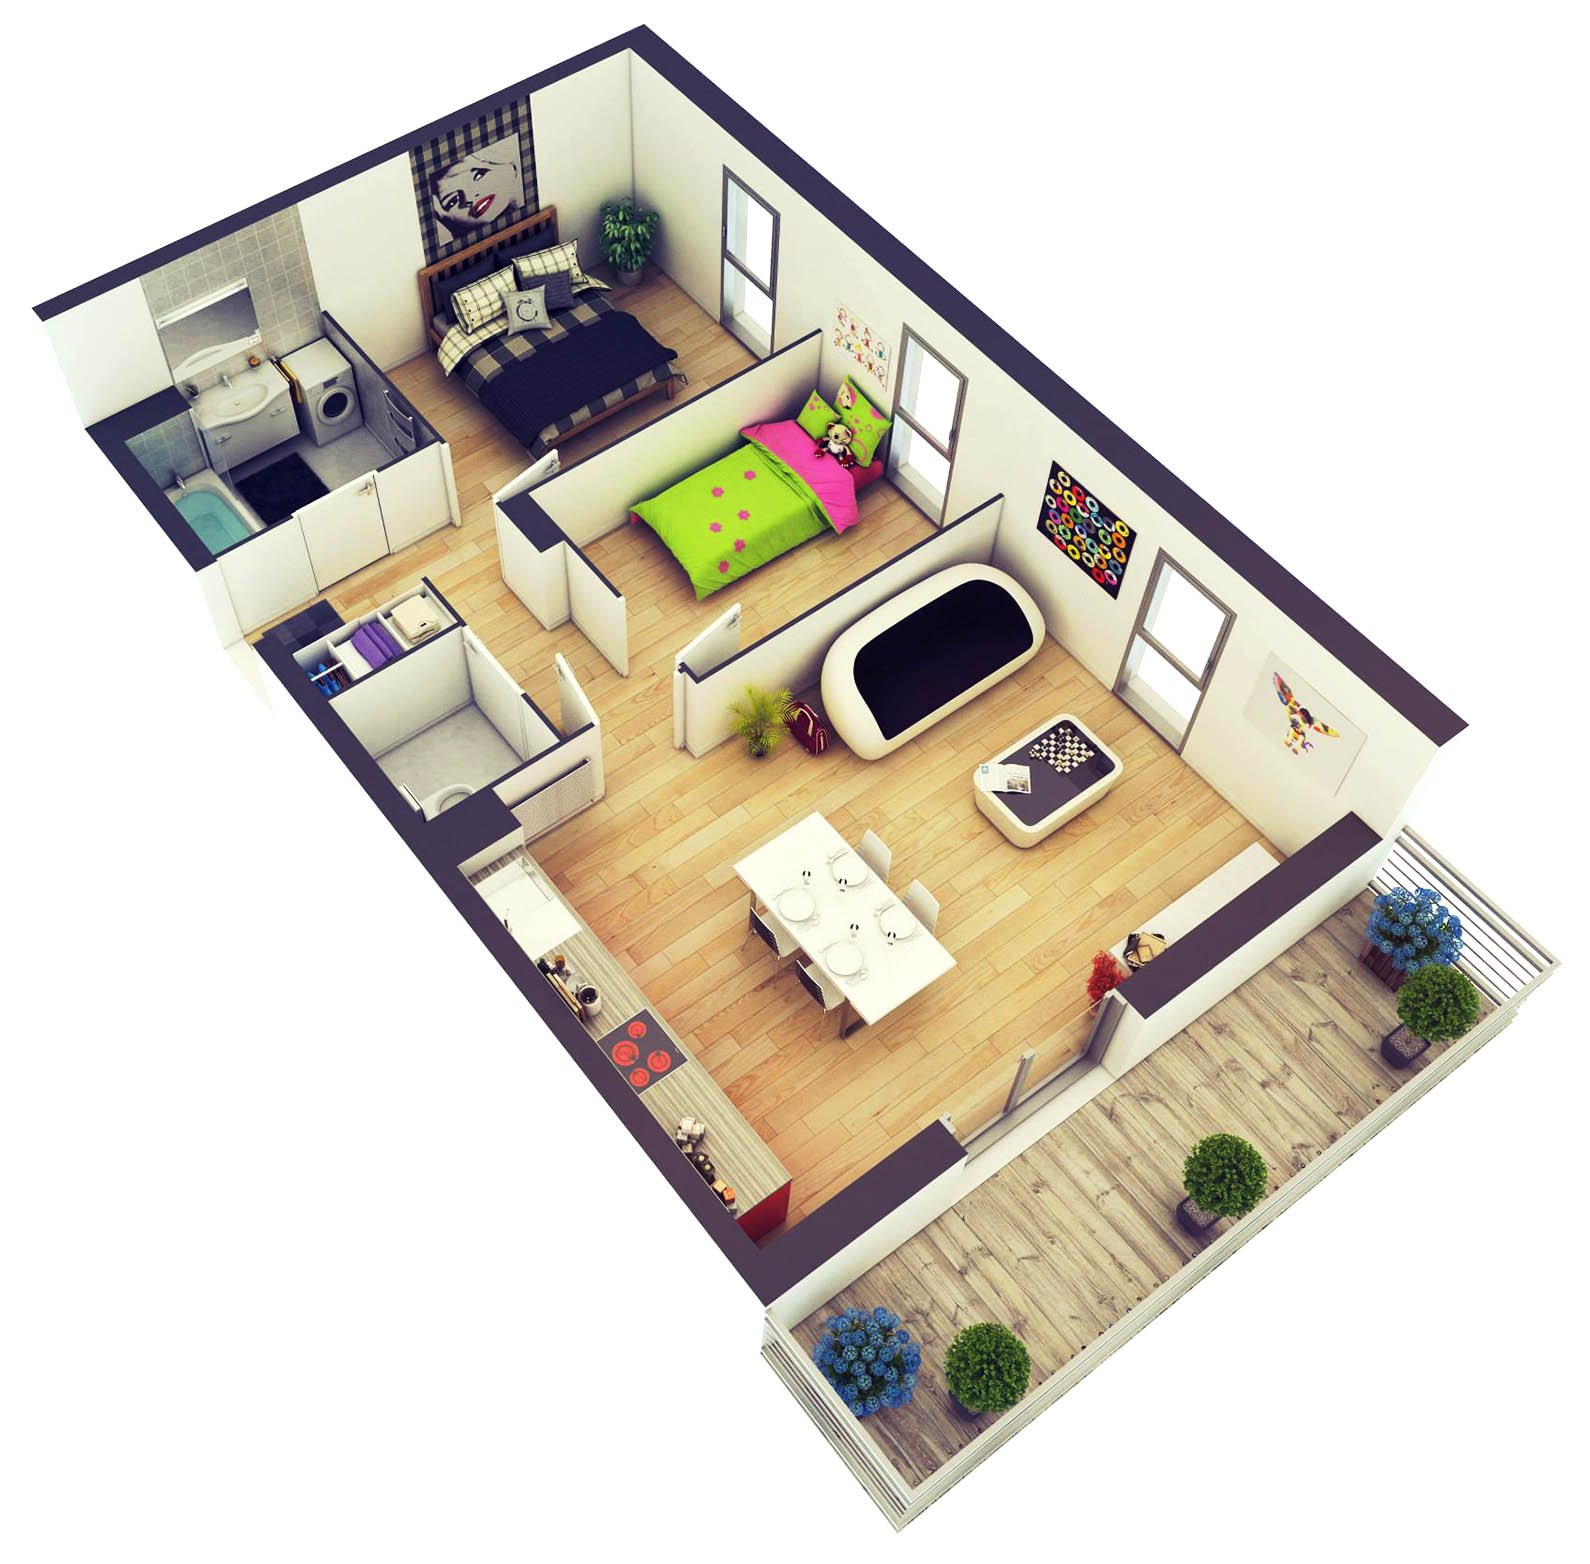 61 New Desain Rumah Minimalis Modern 2 Kamar Tidur Terlengkap Arcadia Design Architect